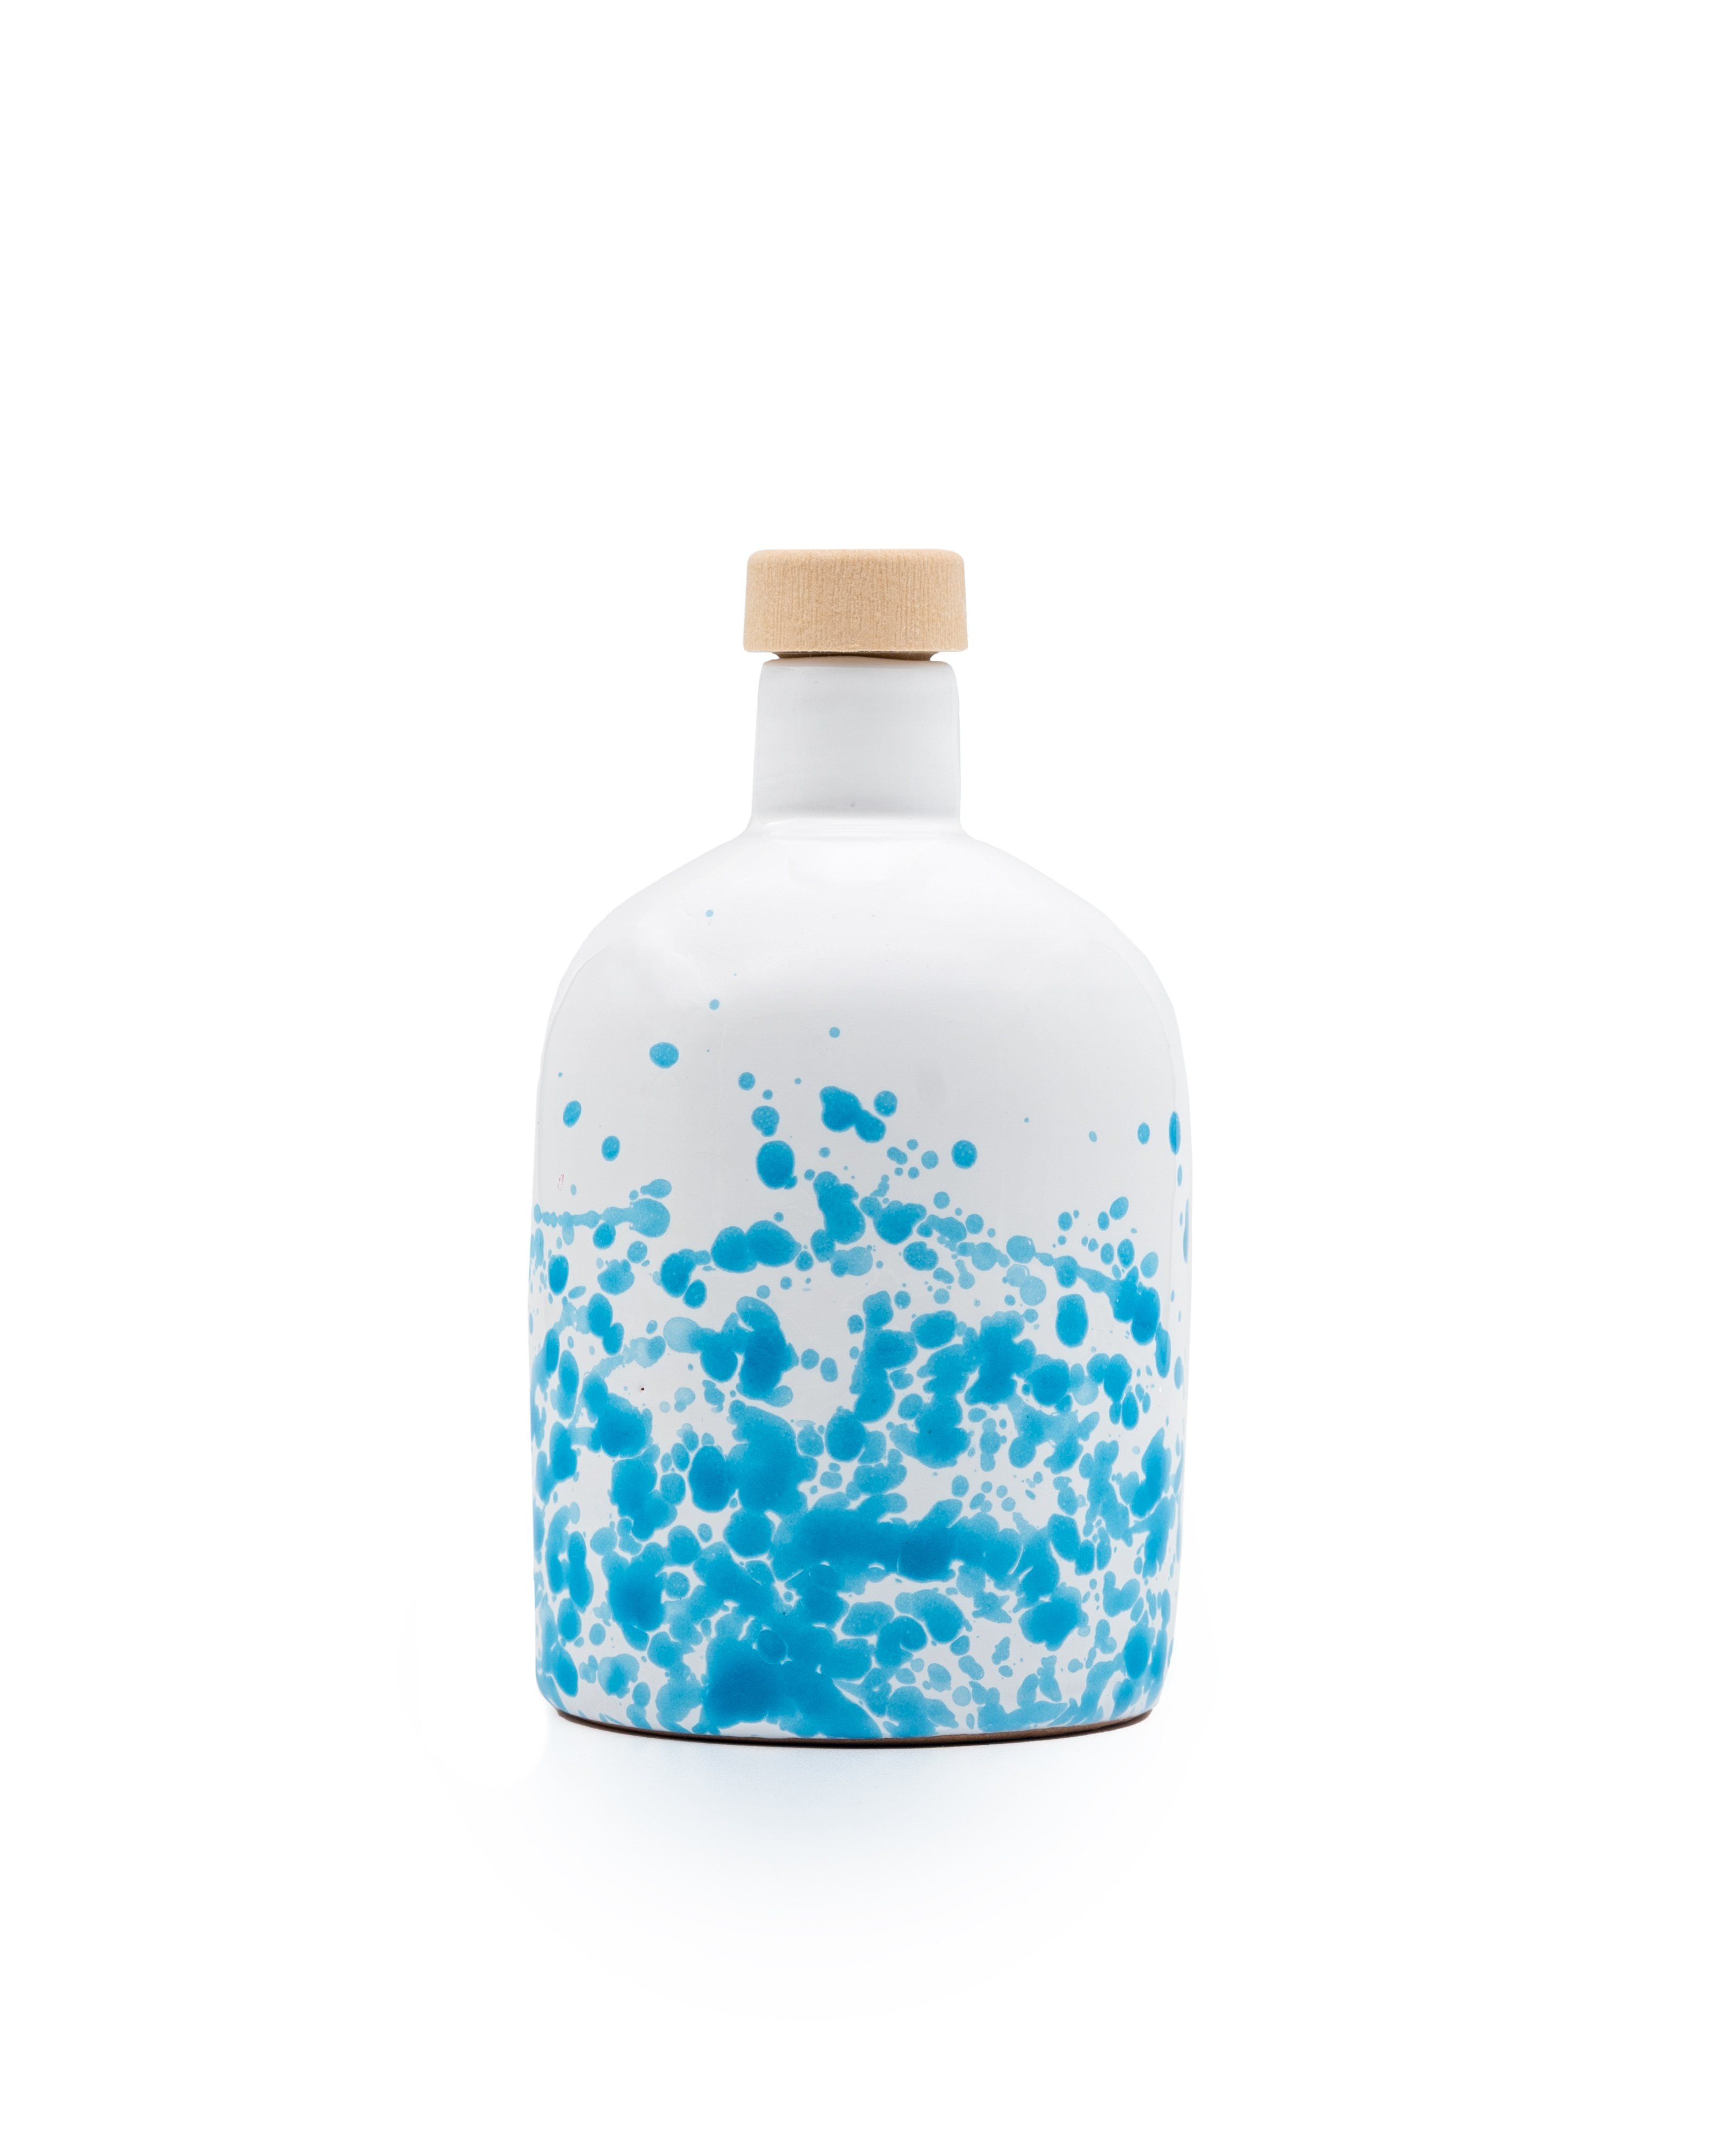 ALLEGRO natif Huile d'olive extra vierge biologique, filtrée, bouteille en céramique bleue de 500 ml.